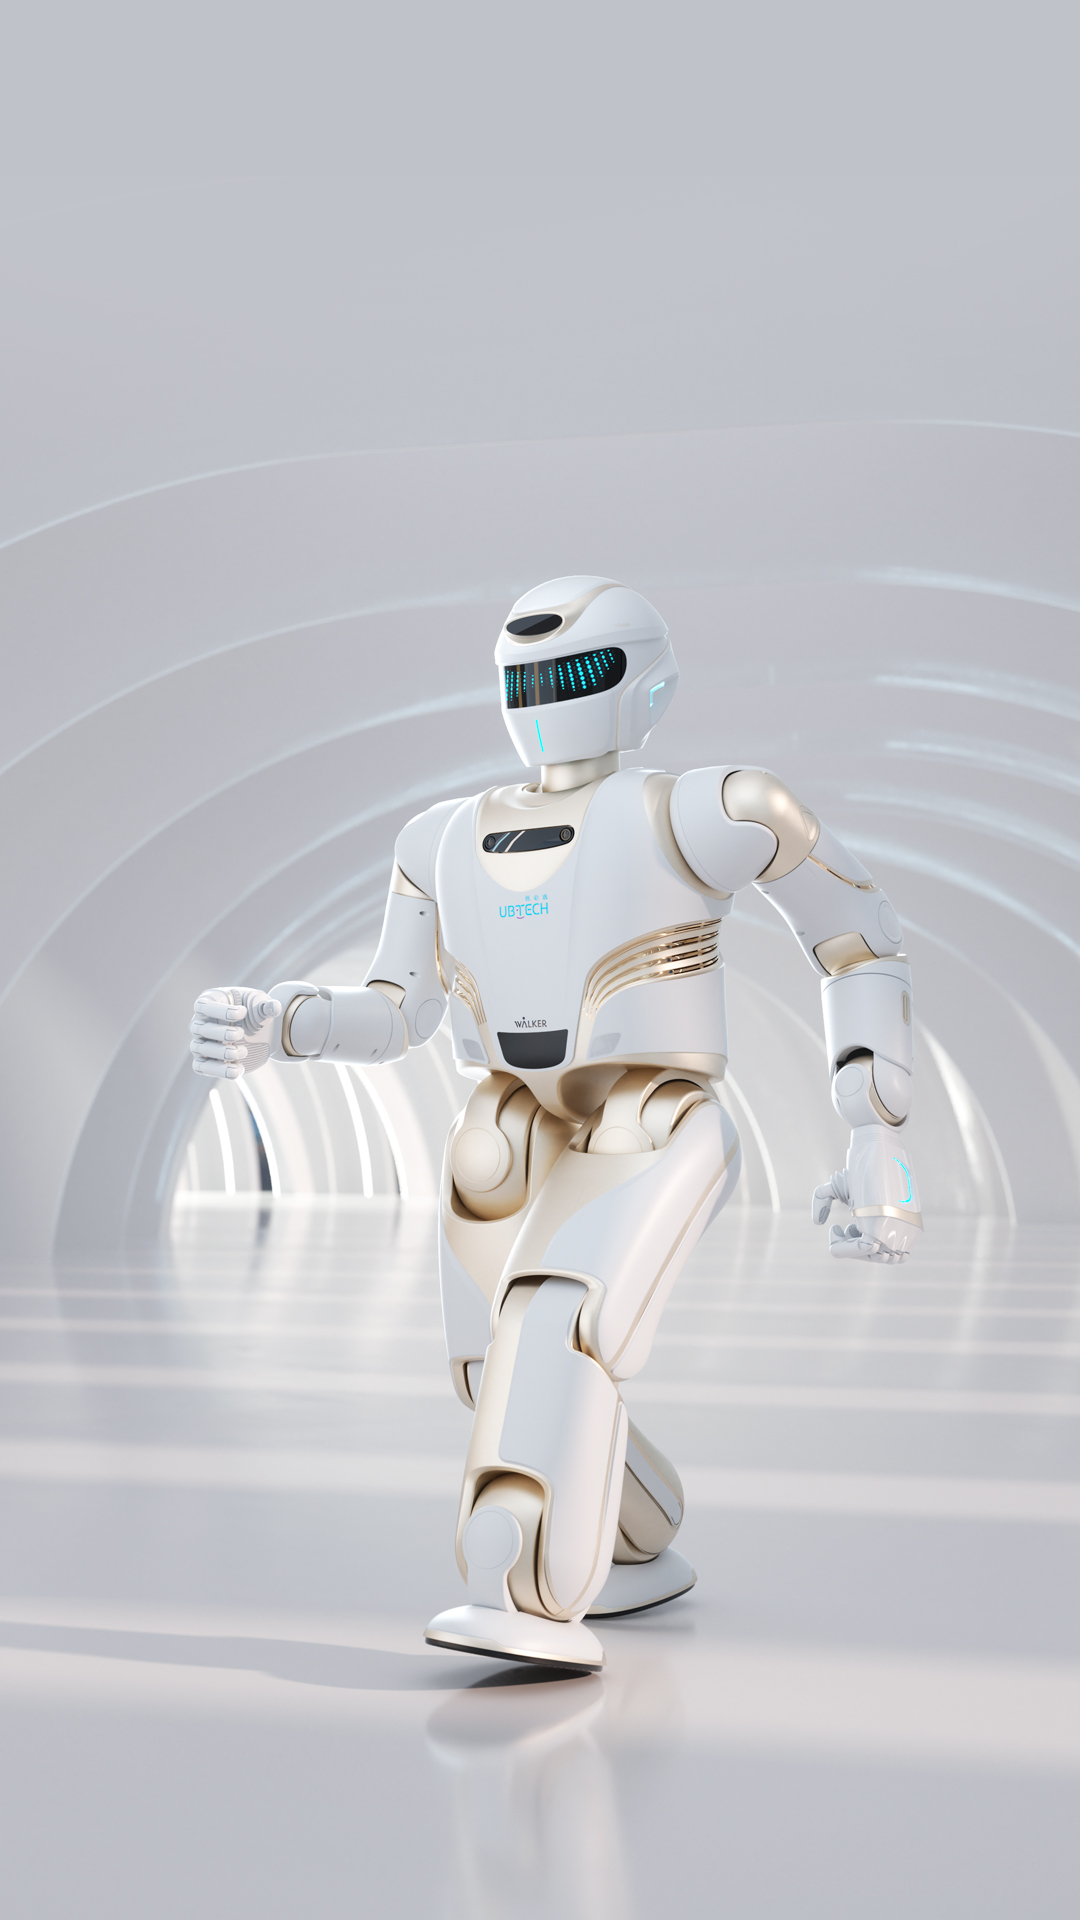 全新一代大型人形机器人<br>每一步前进 只为与你同行